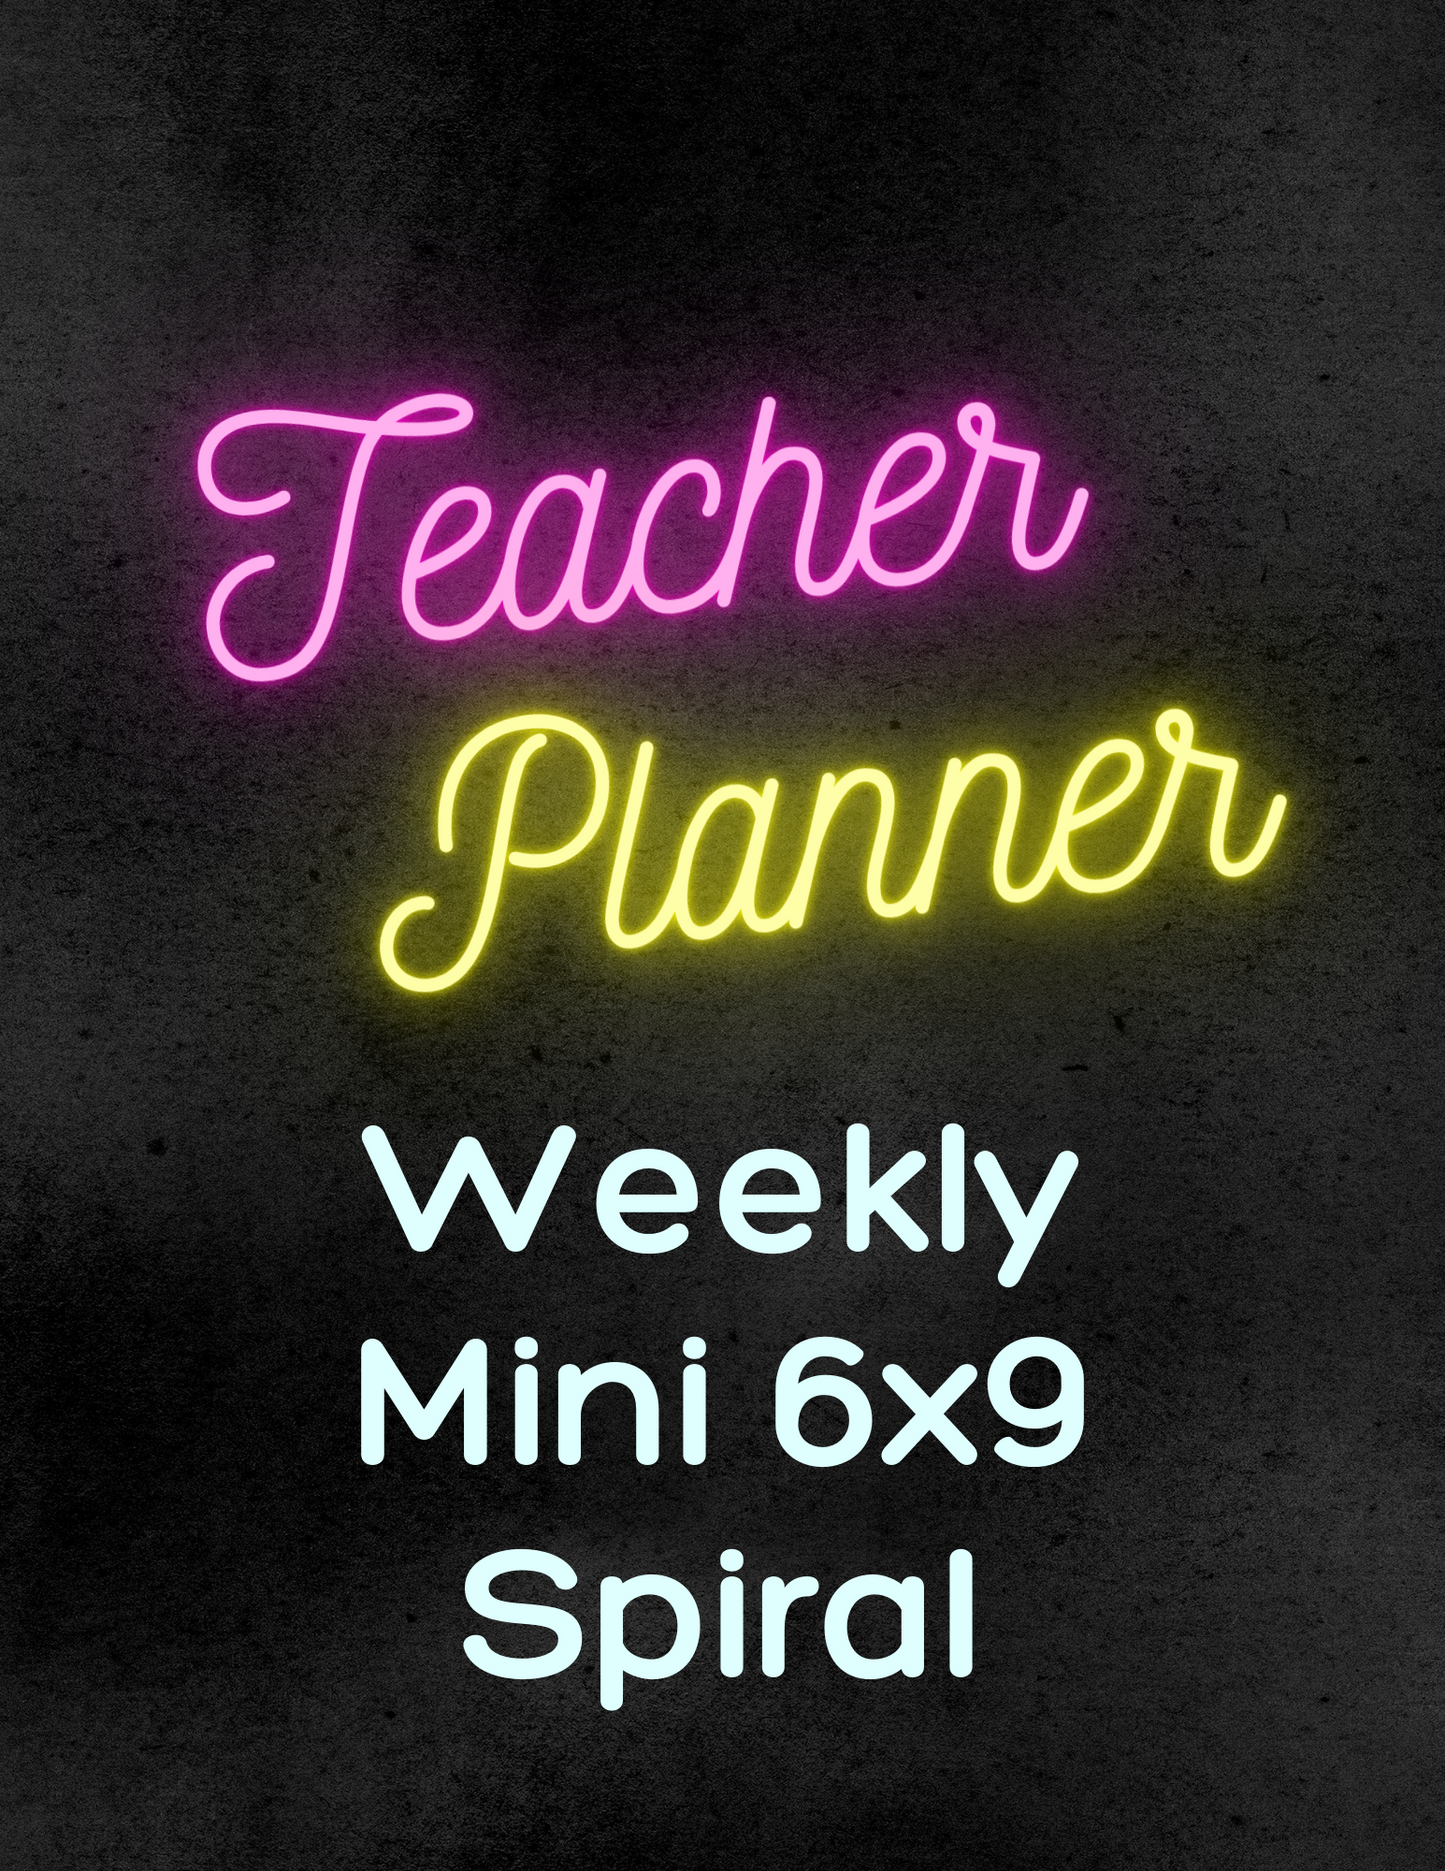 Weekly Teacher Planner - Mini Size/Spiral